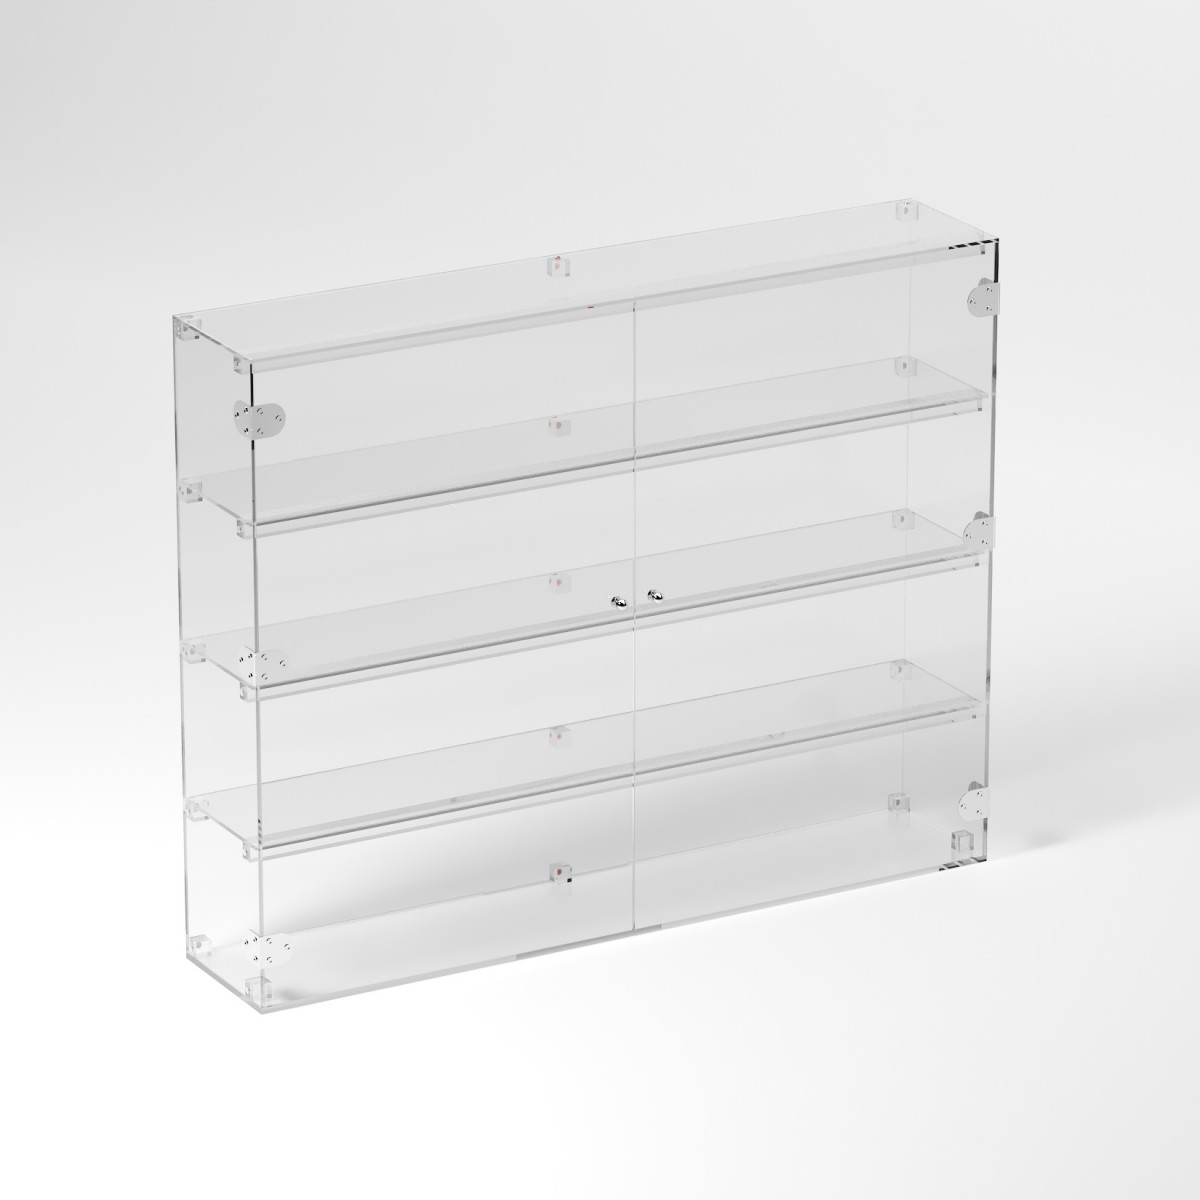 E-871 VET - Ampia vetrina espositiva in plexiglass trasparente a 4 ripiani - Misure: 100 x 20 x h80 cm